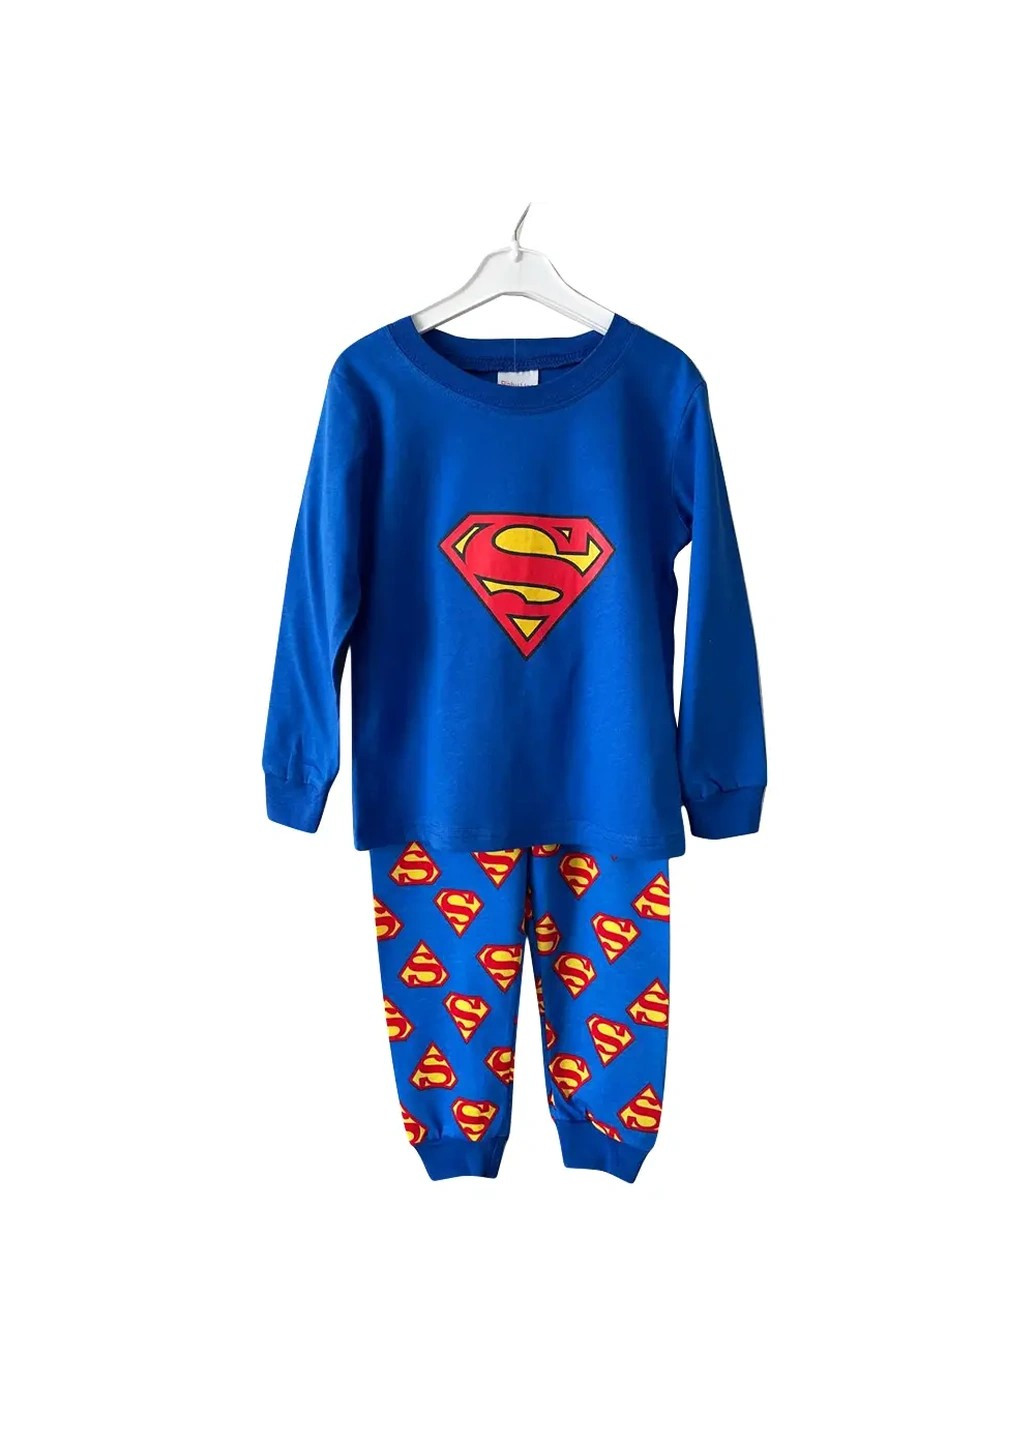 Синяя красивая и модная детская пижама для мальчика в возрасте 4 года. рост 100см. Baby